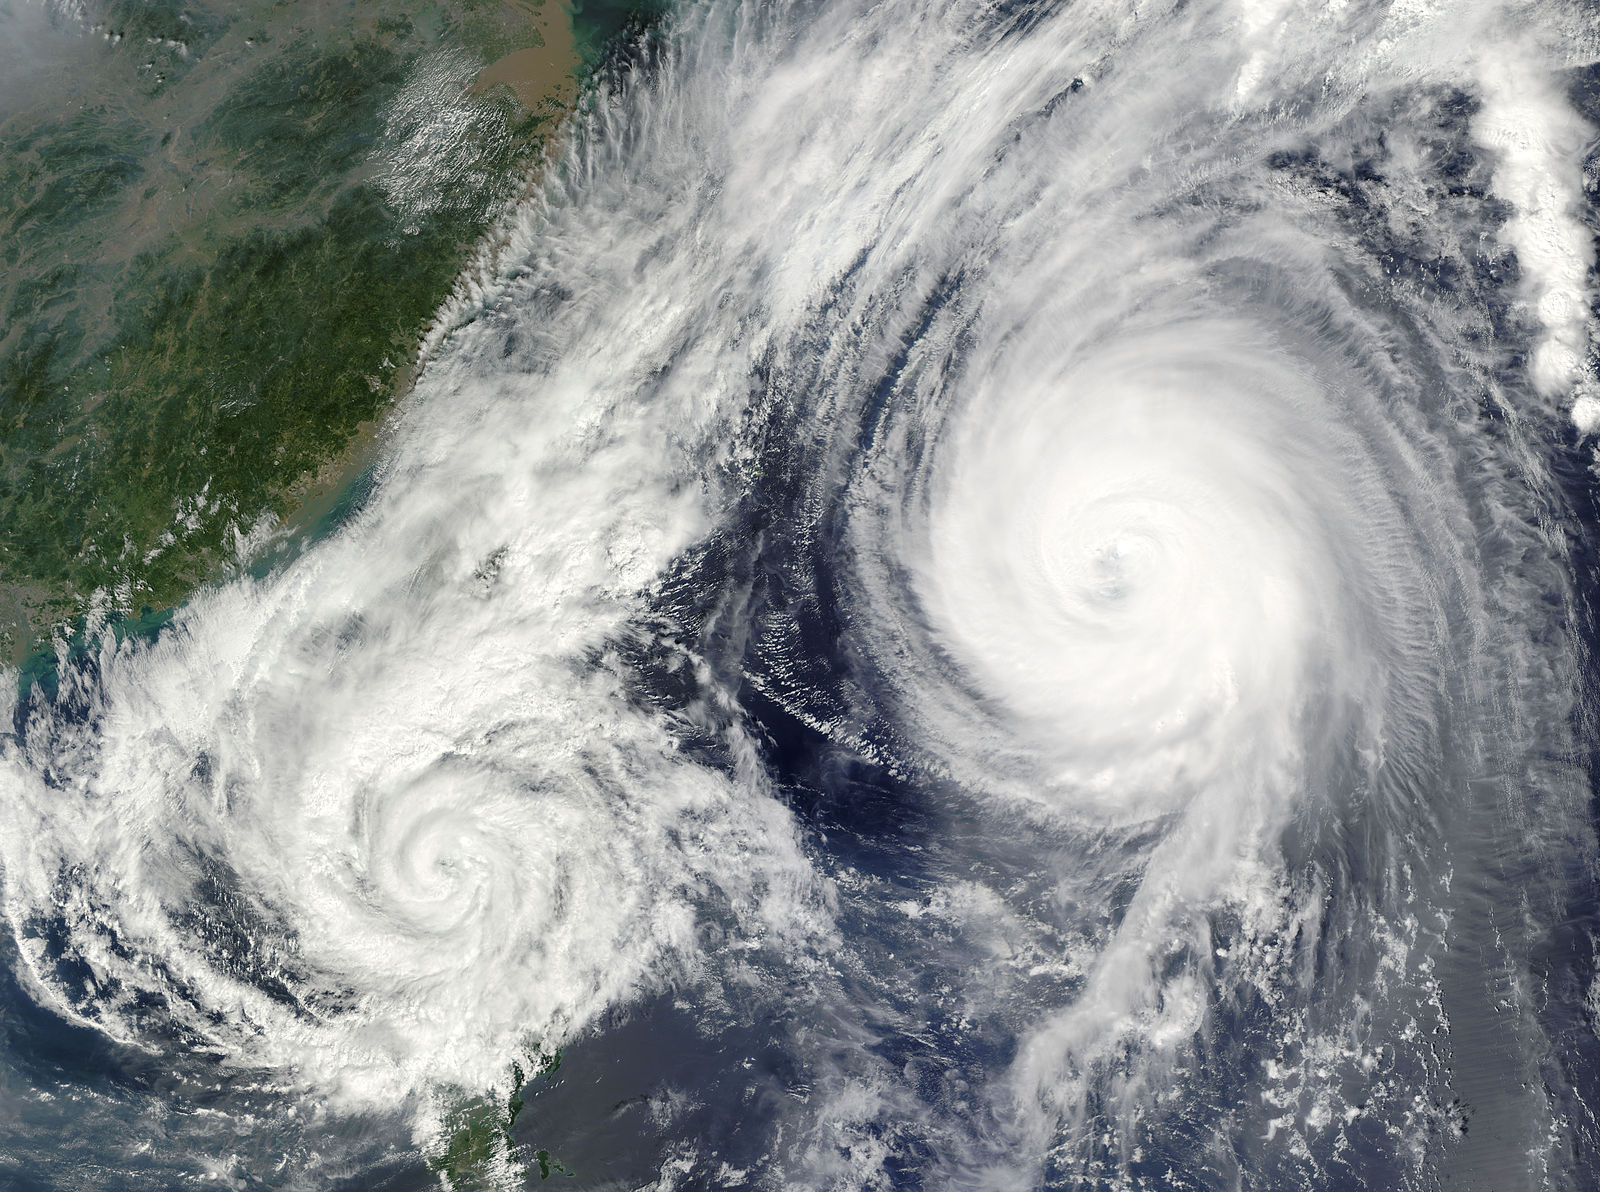 Los huracanes serán más frecuentes por el aumento de la temperatura en los océanos. Foto: NASA